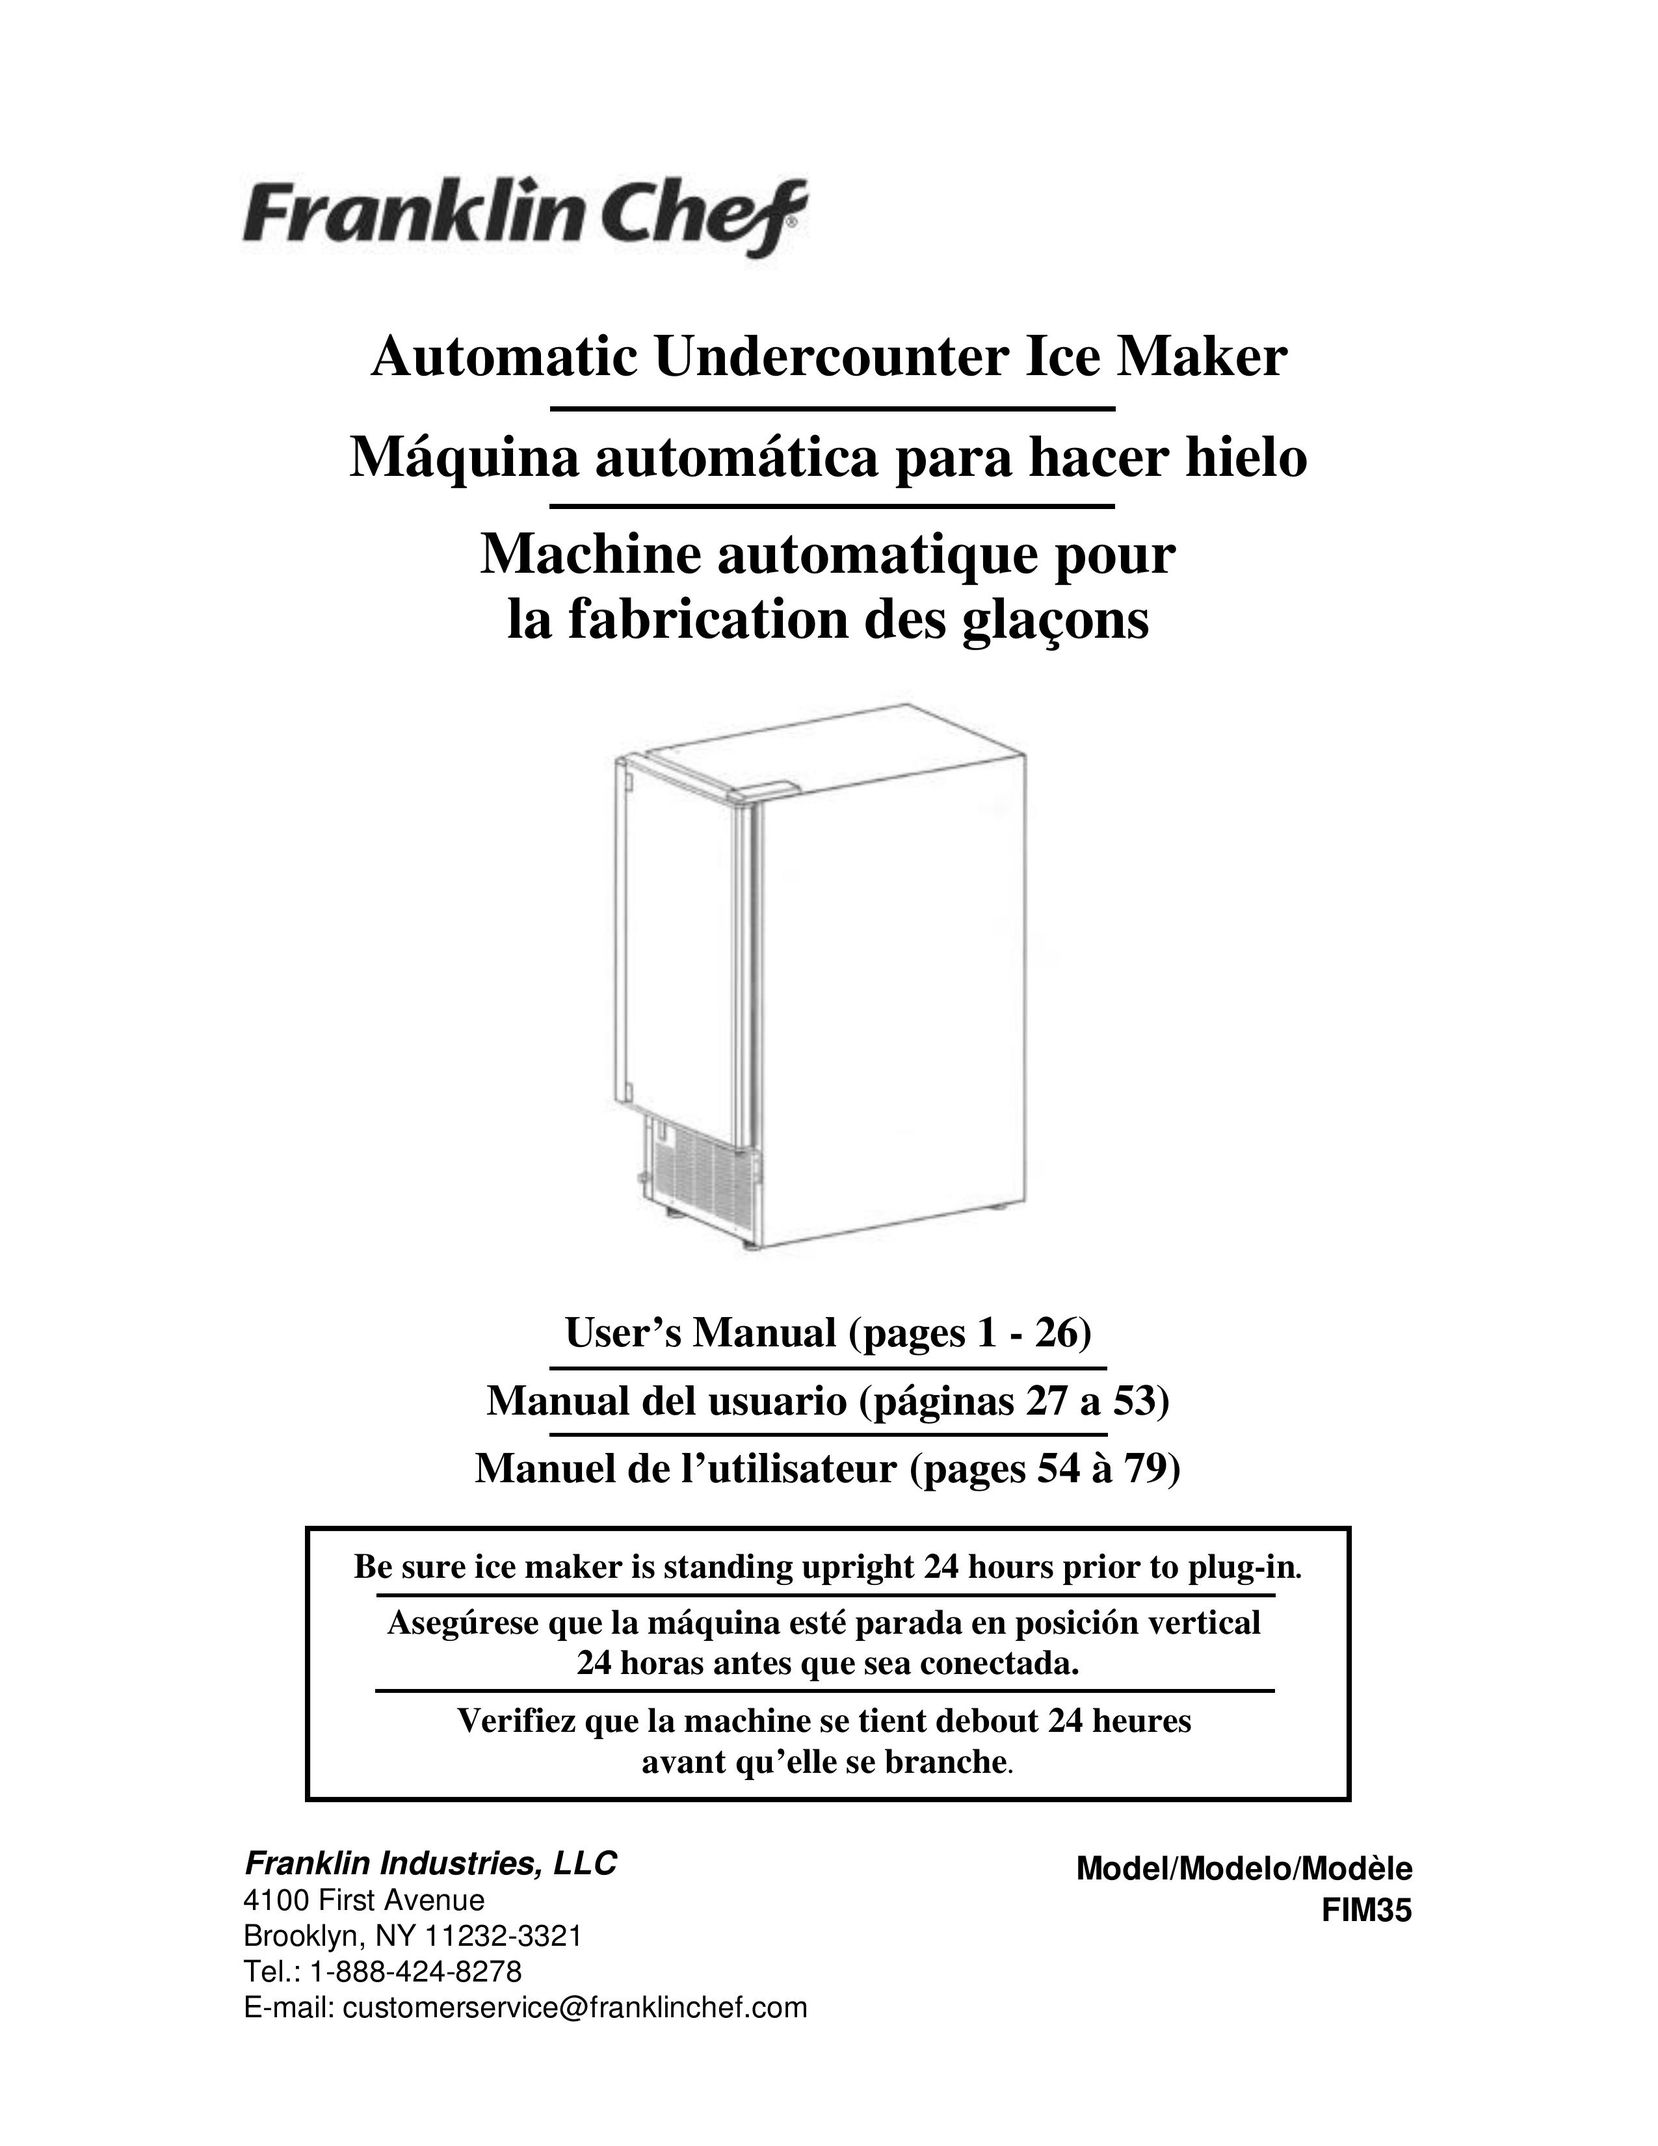 Franklin Industries, L.L.C. fim35 Ice Maker User Manual